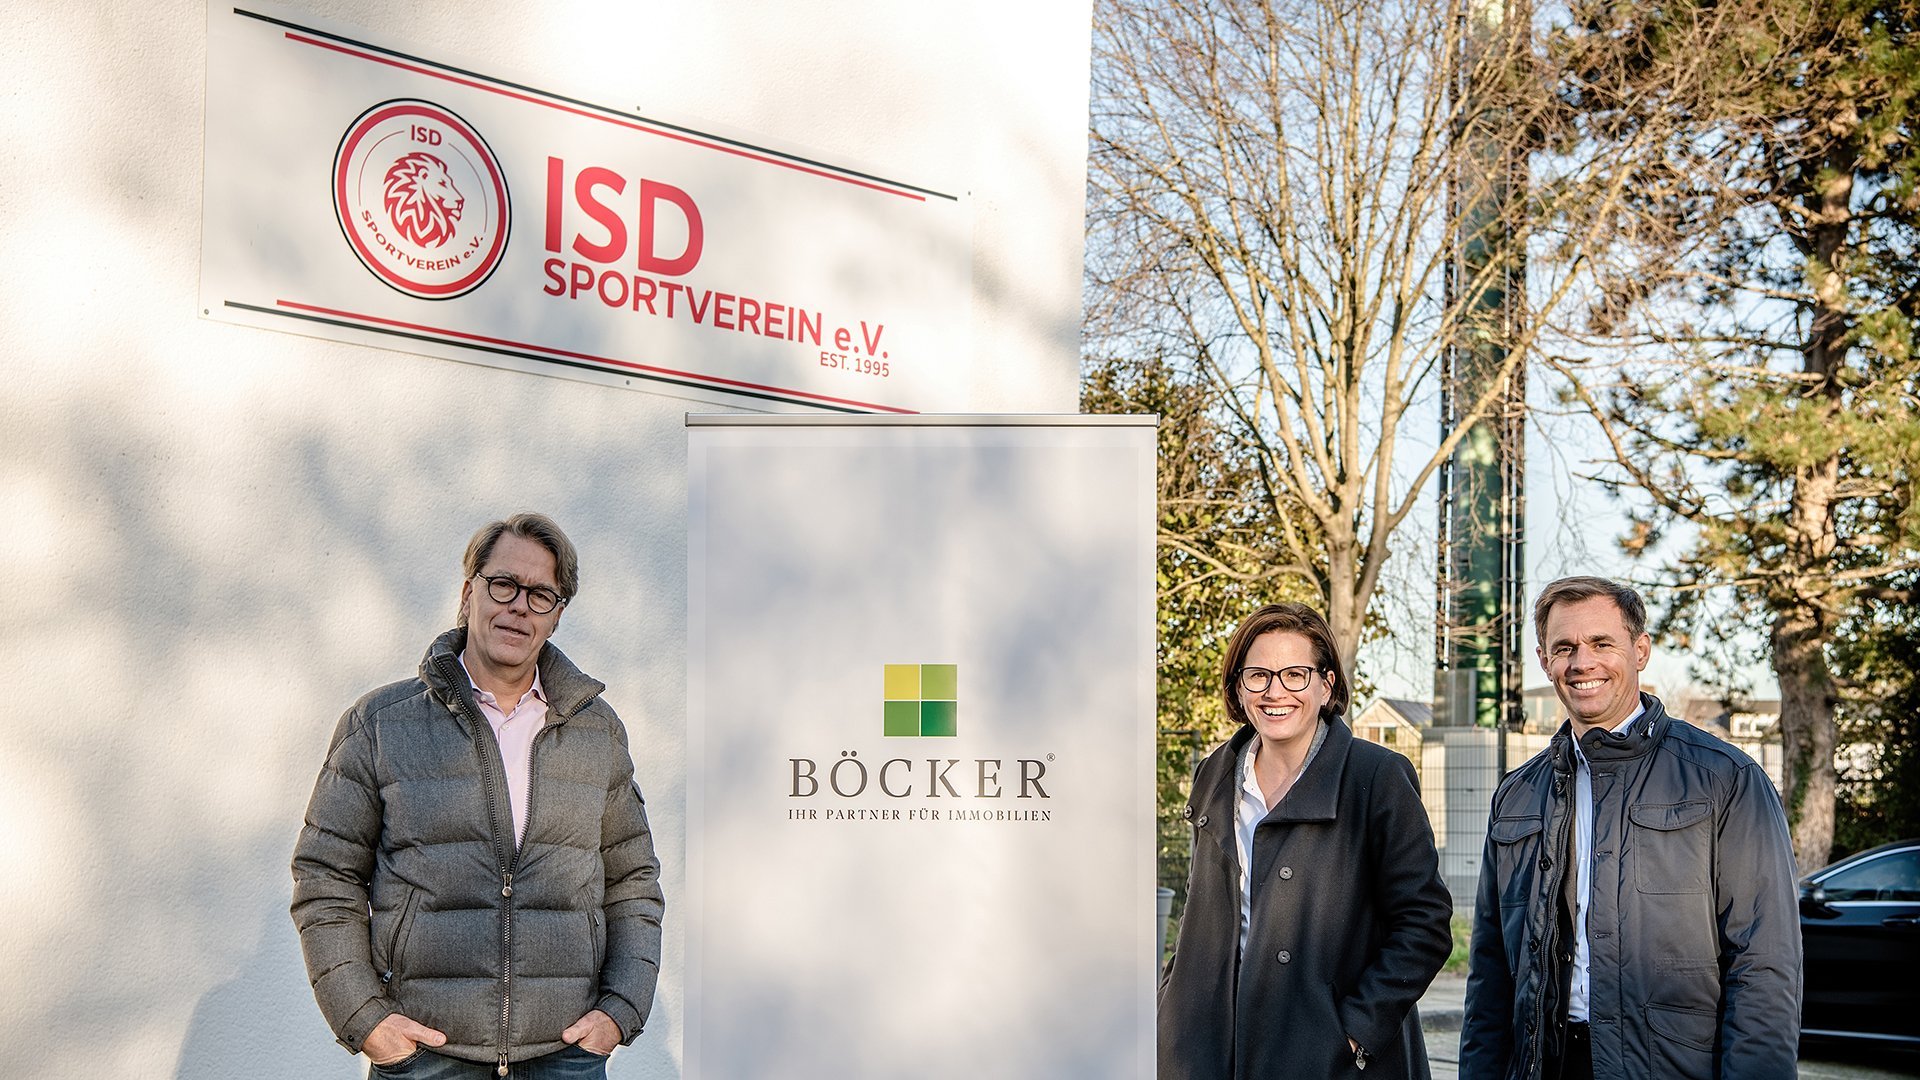 BÖCKER-Wohnimmobilien GmbH - Hauptsponsor des ISD Sportvereins e.V.